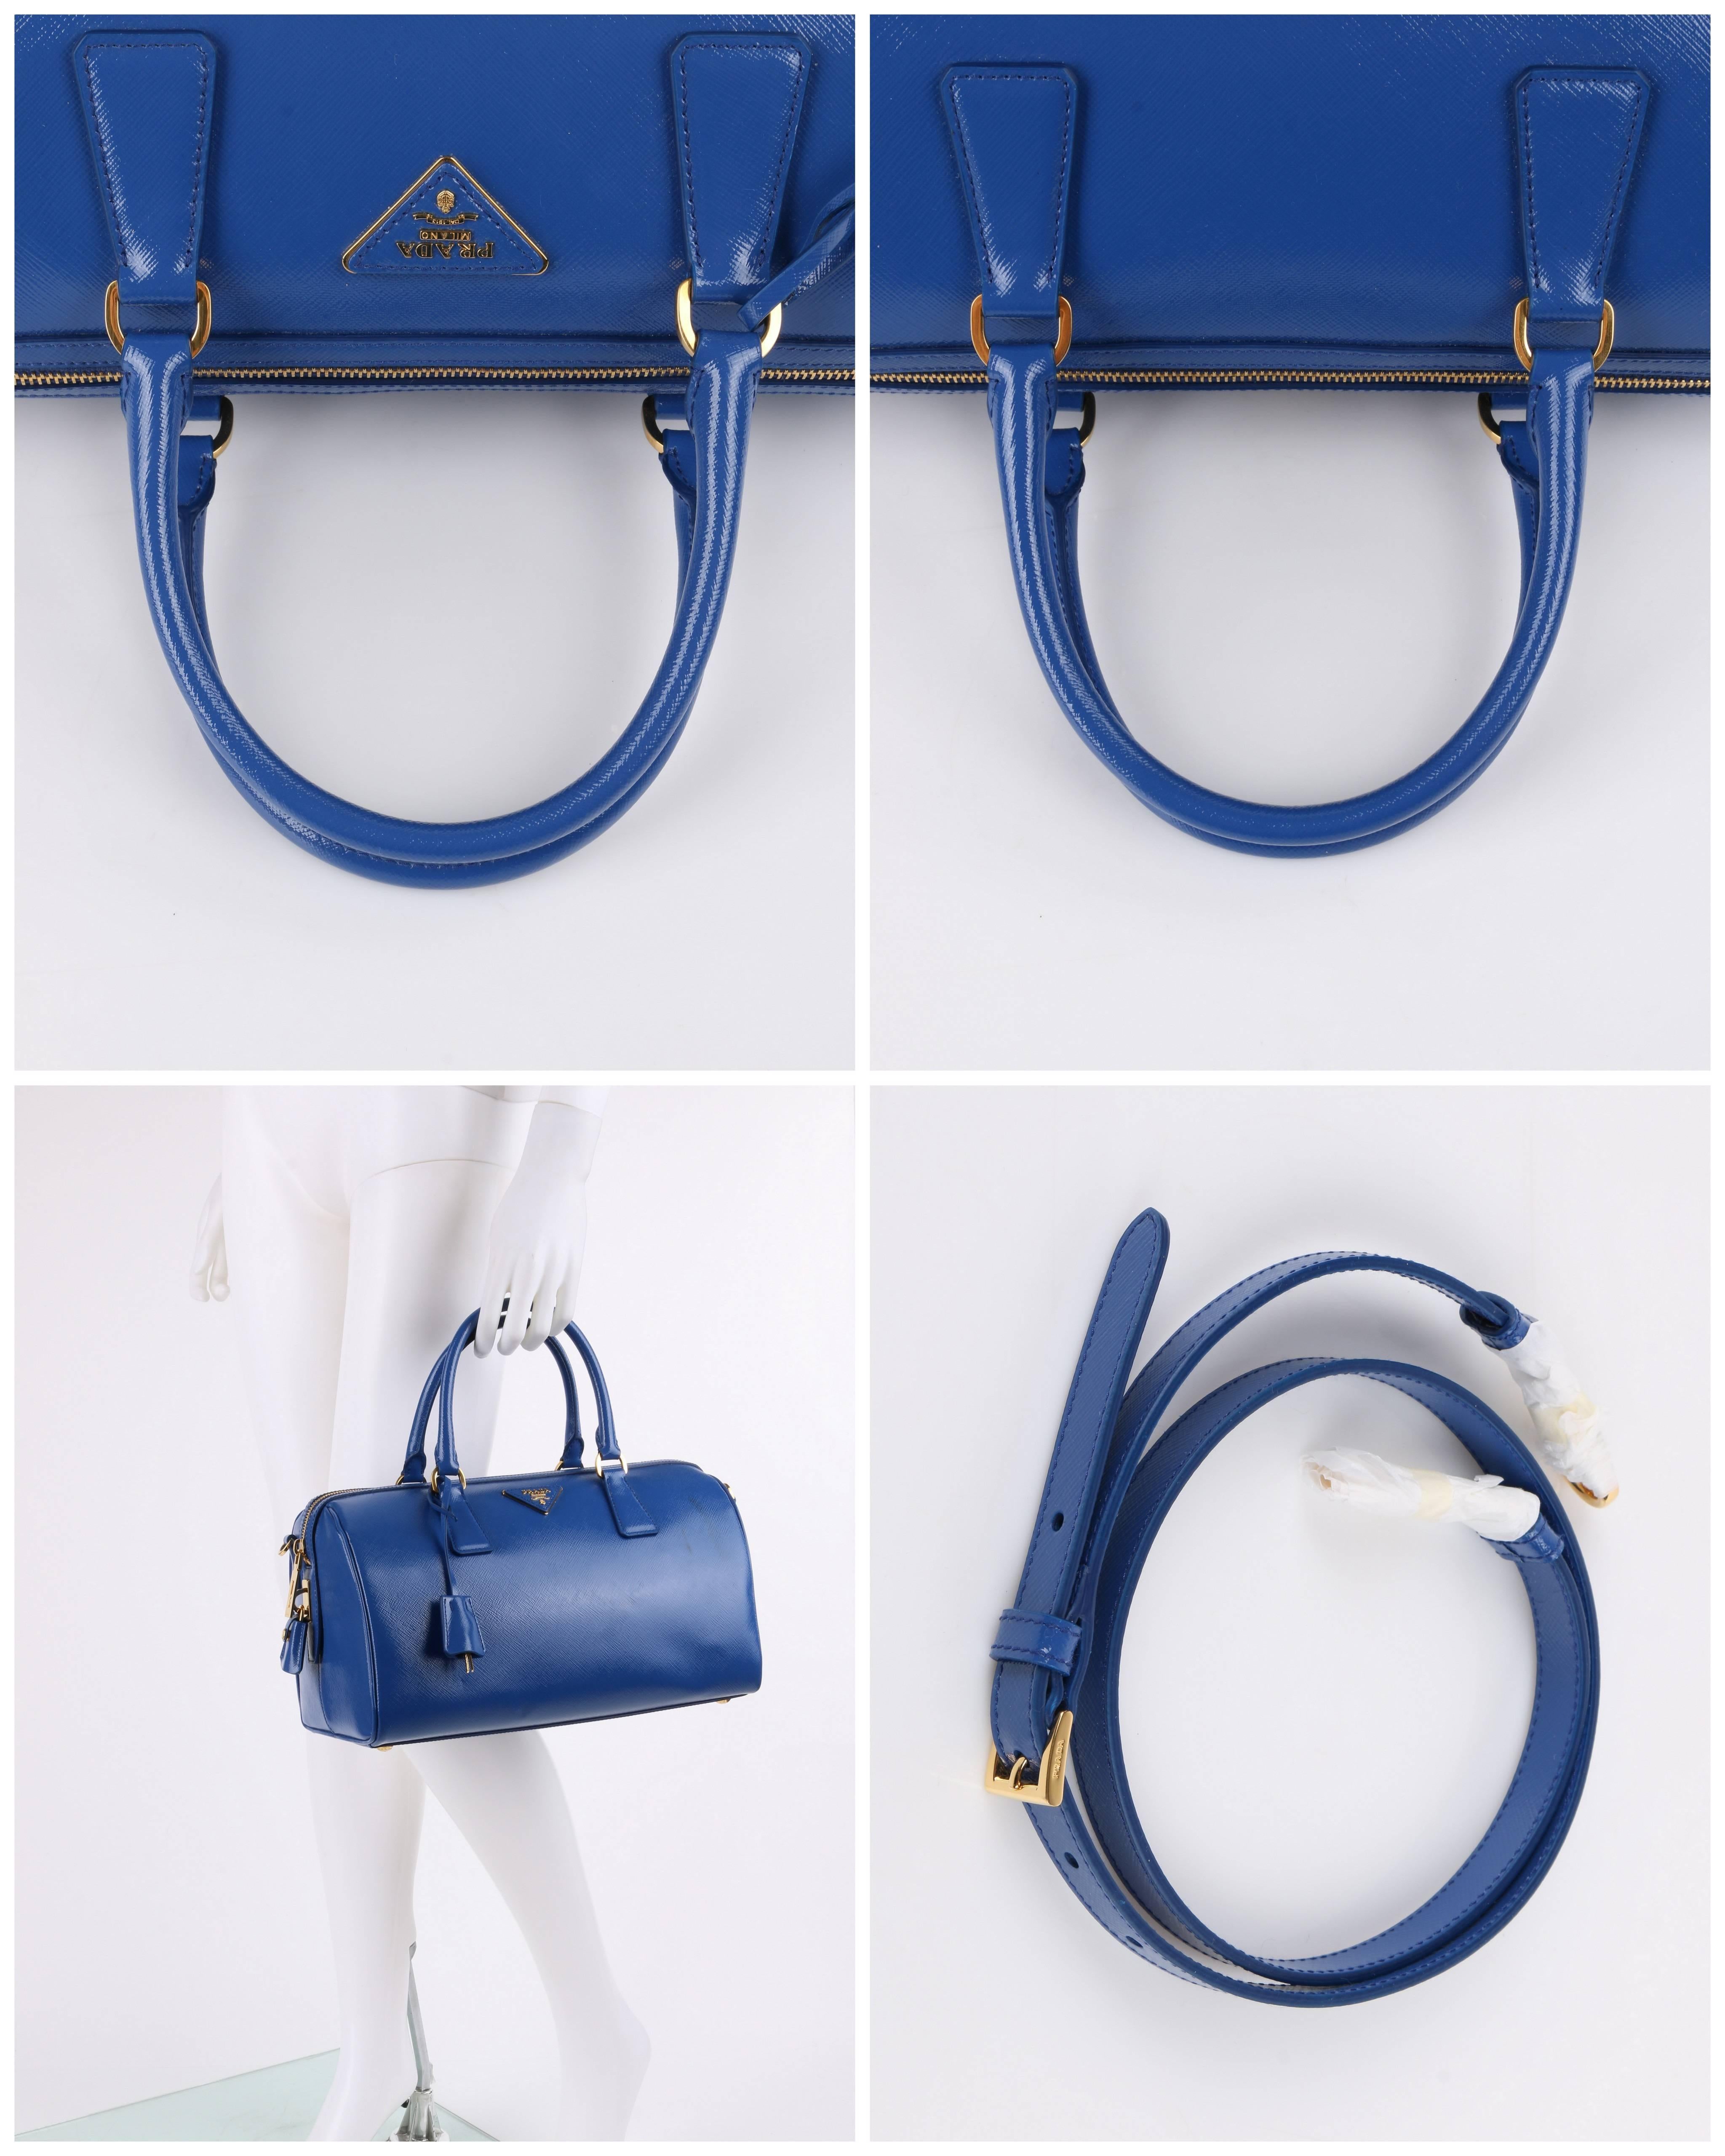 PRADA S/S 2012 Blue Saffiano Vernice Patent Leather Convertible Boston Bag Purse 1